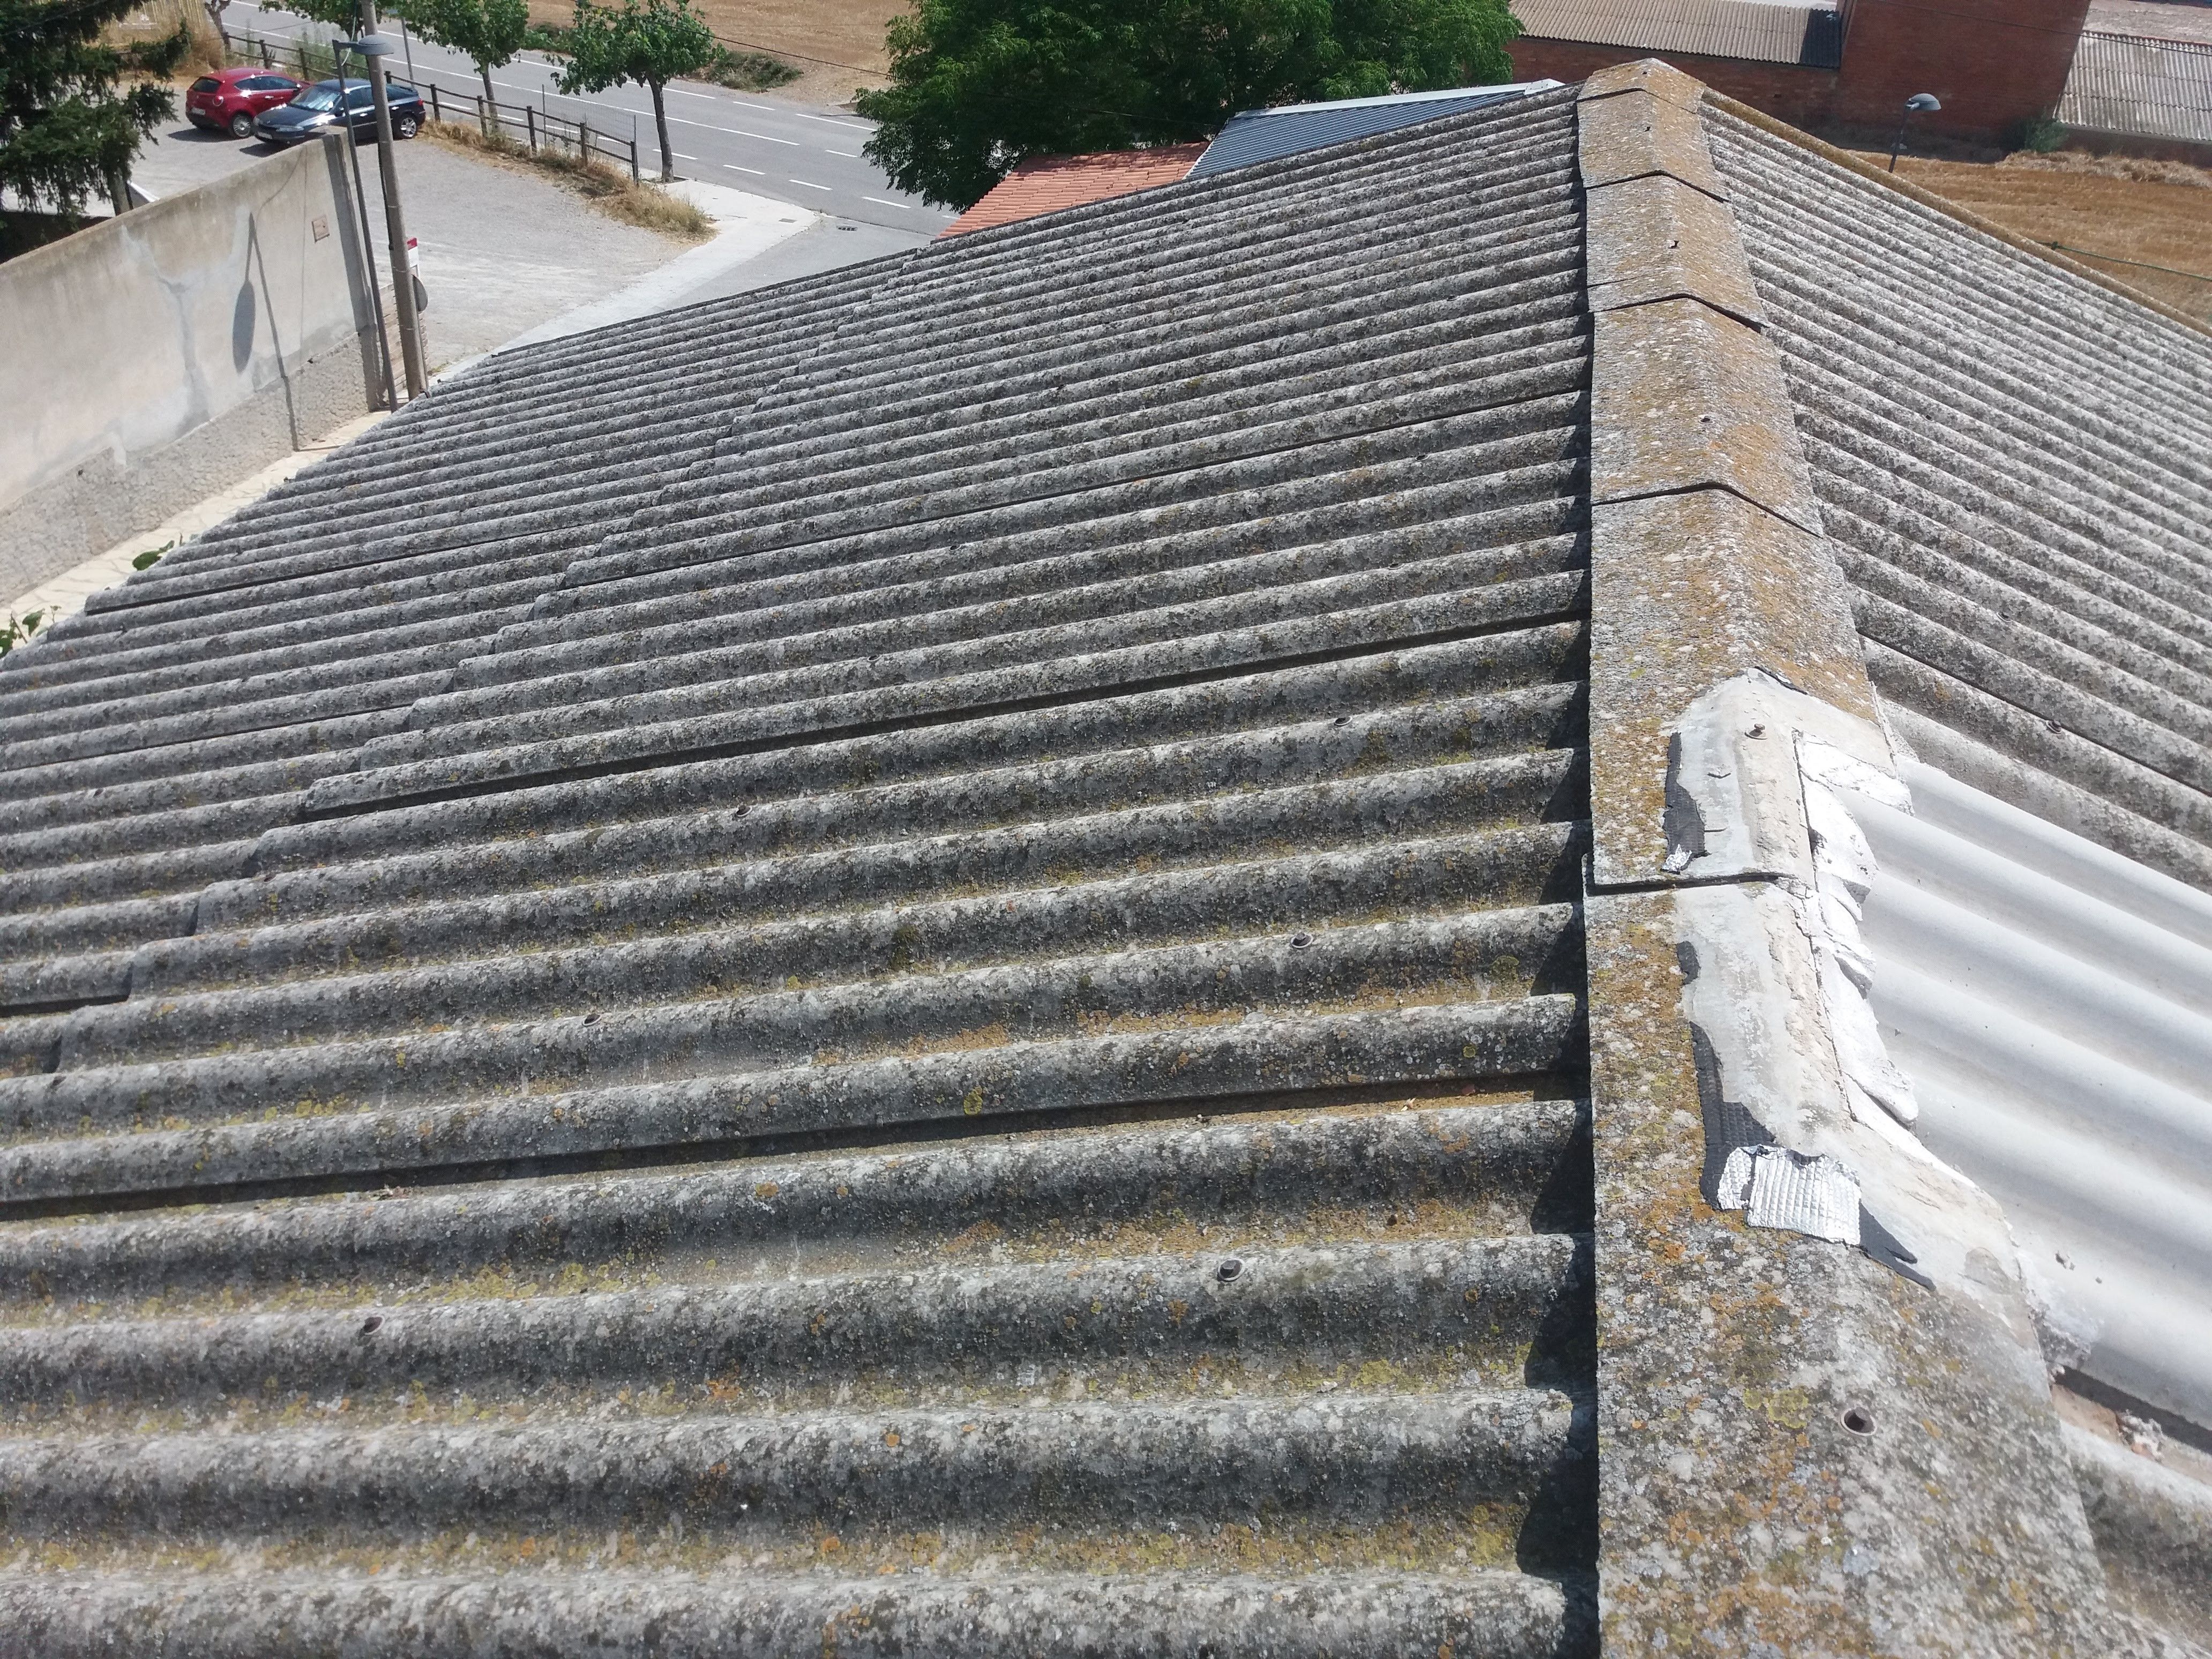 Roofs before waterproofing